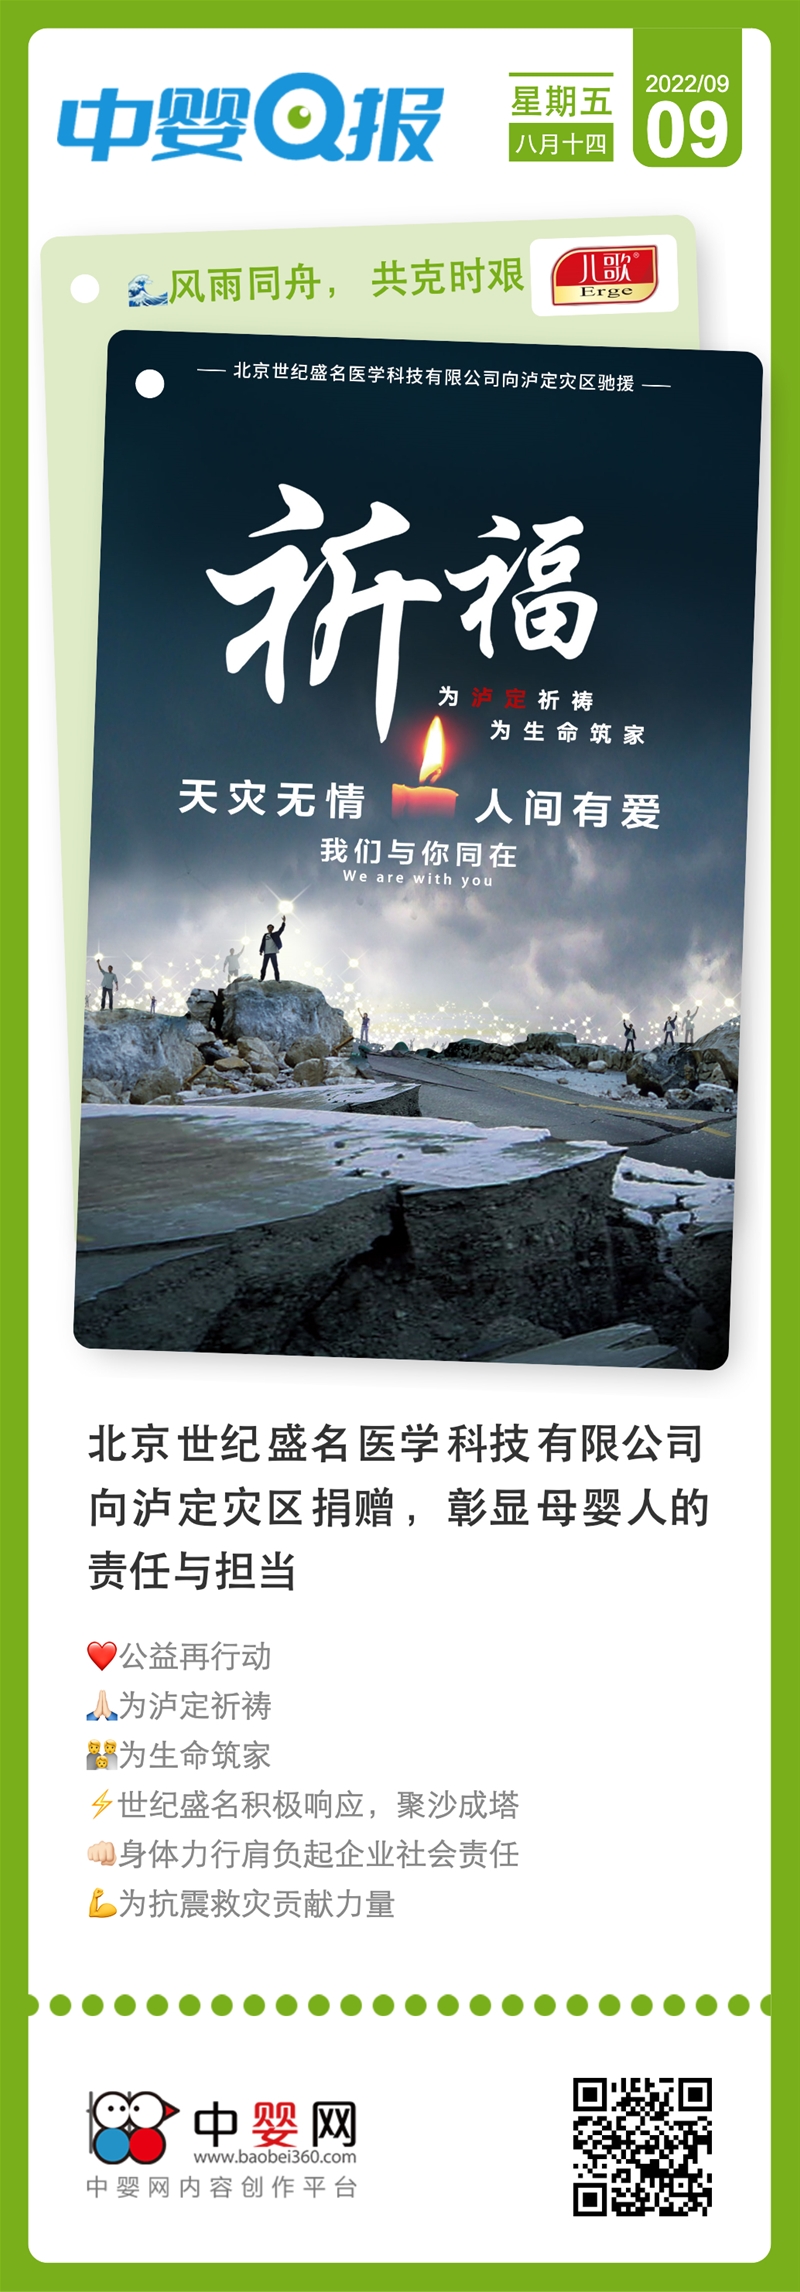 北京世紀盛名醫學科技有限公司向瀘定災區捐贈